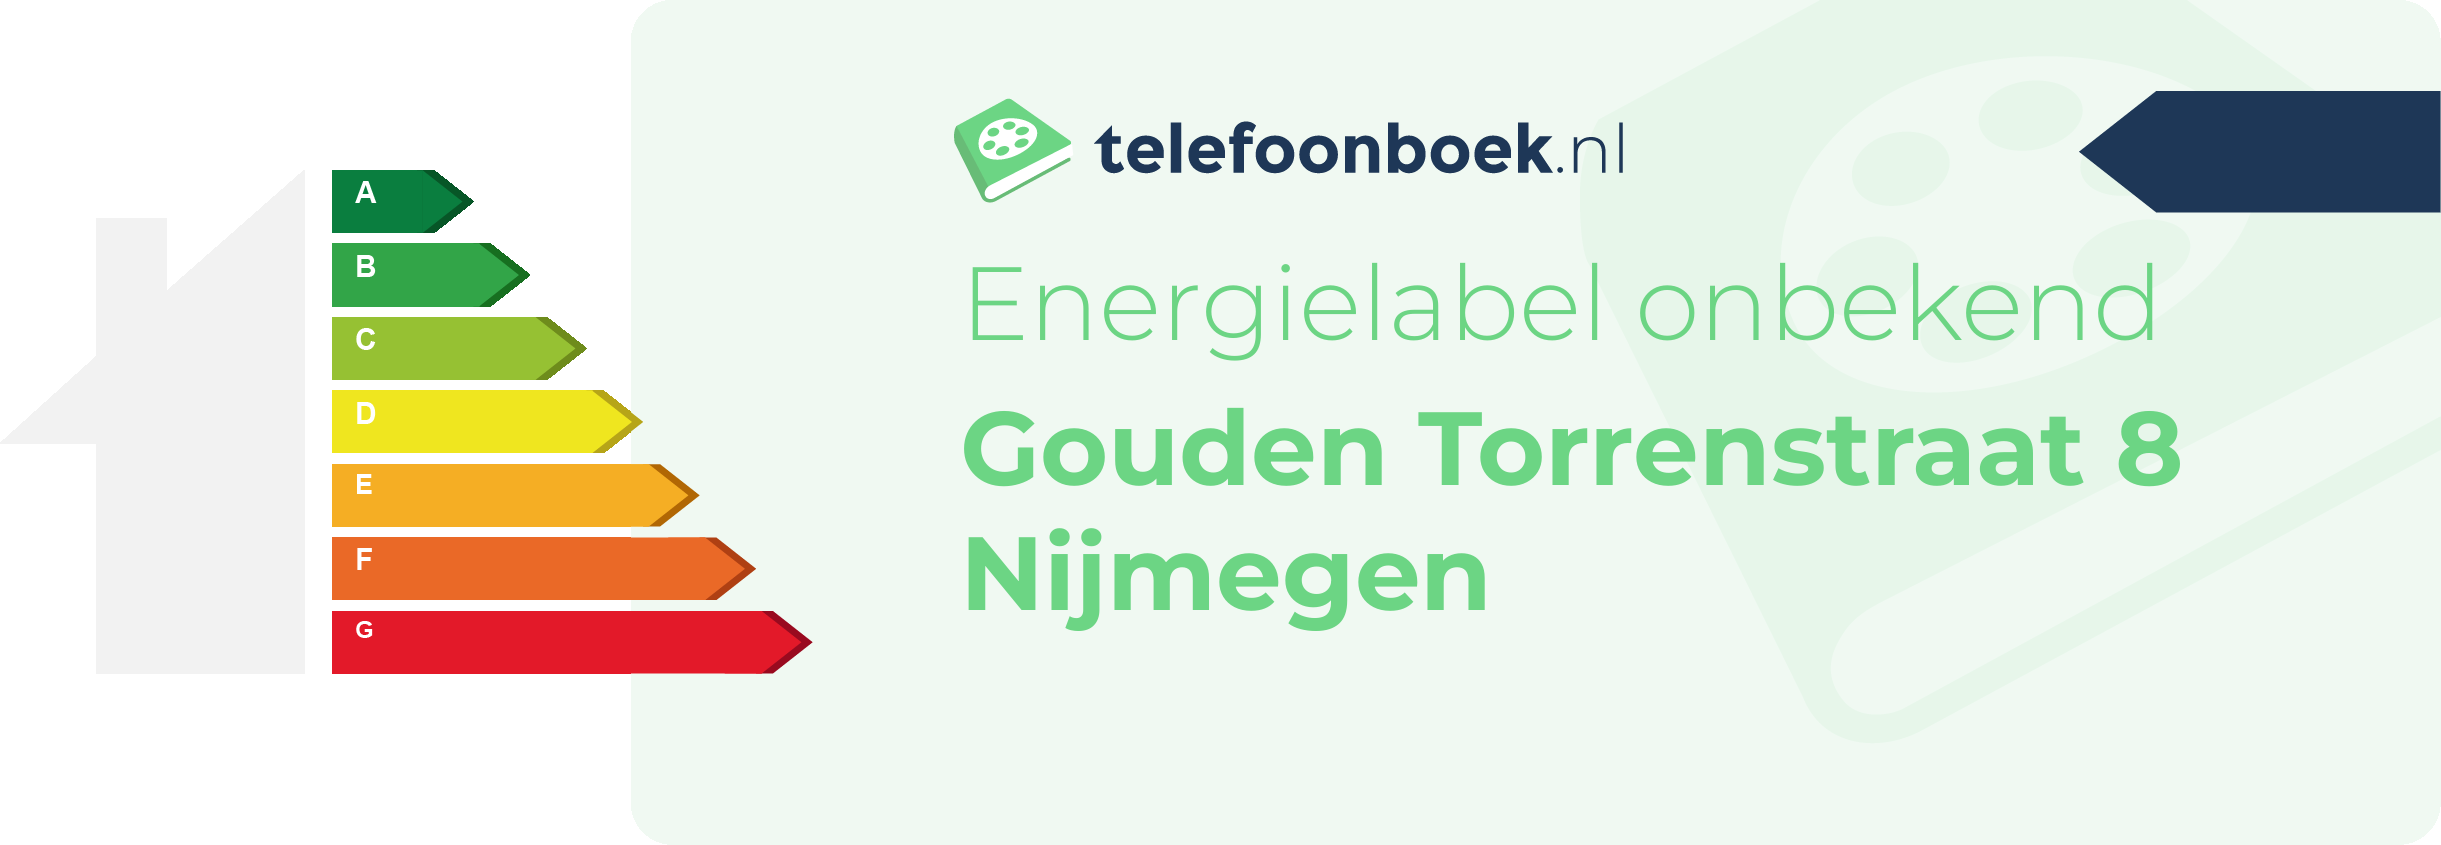 Energielabel Gouden Torrenstraat 8 Nijmegen